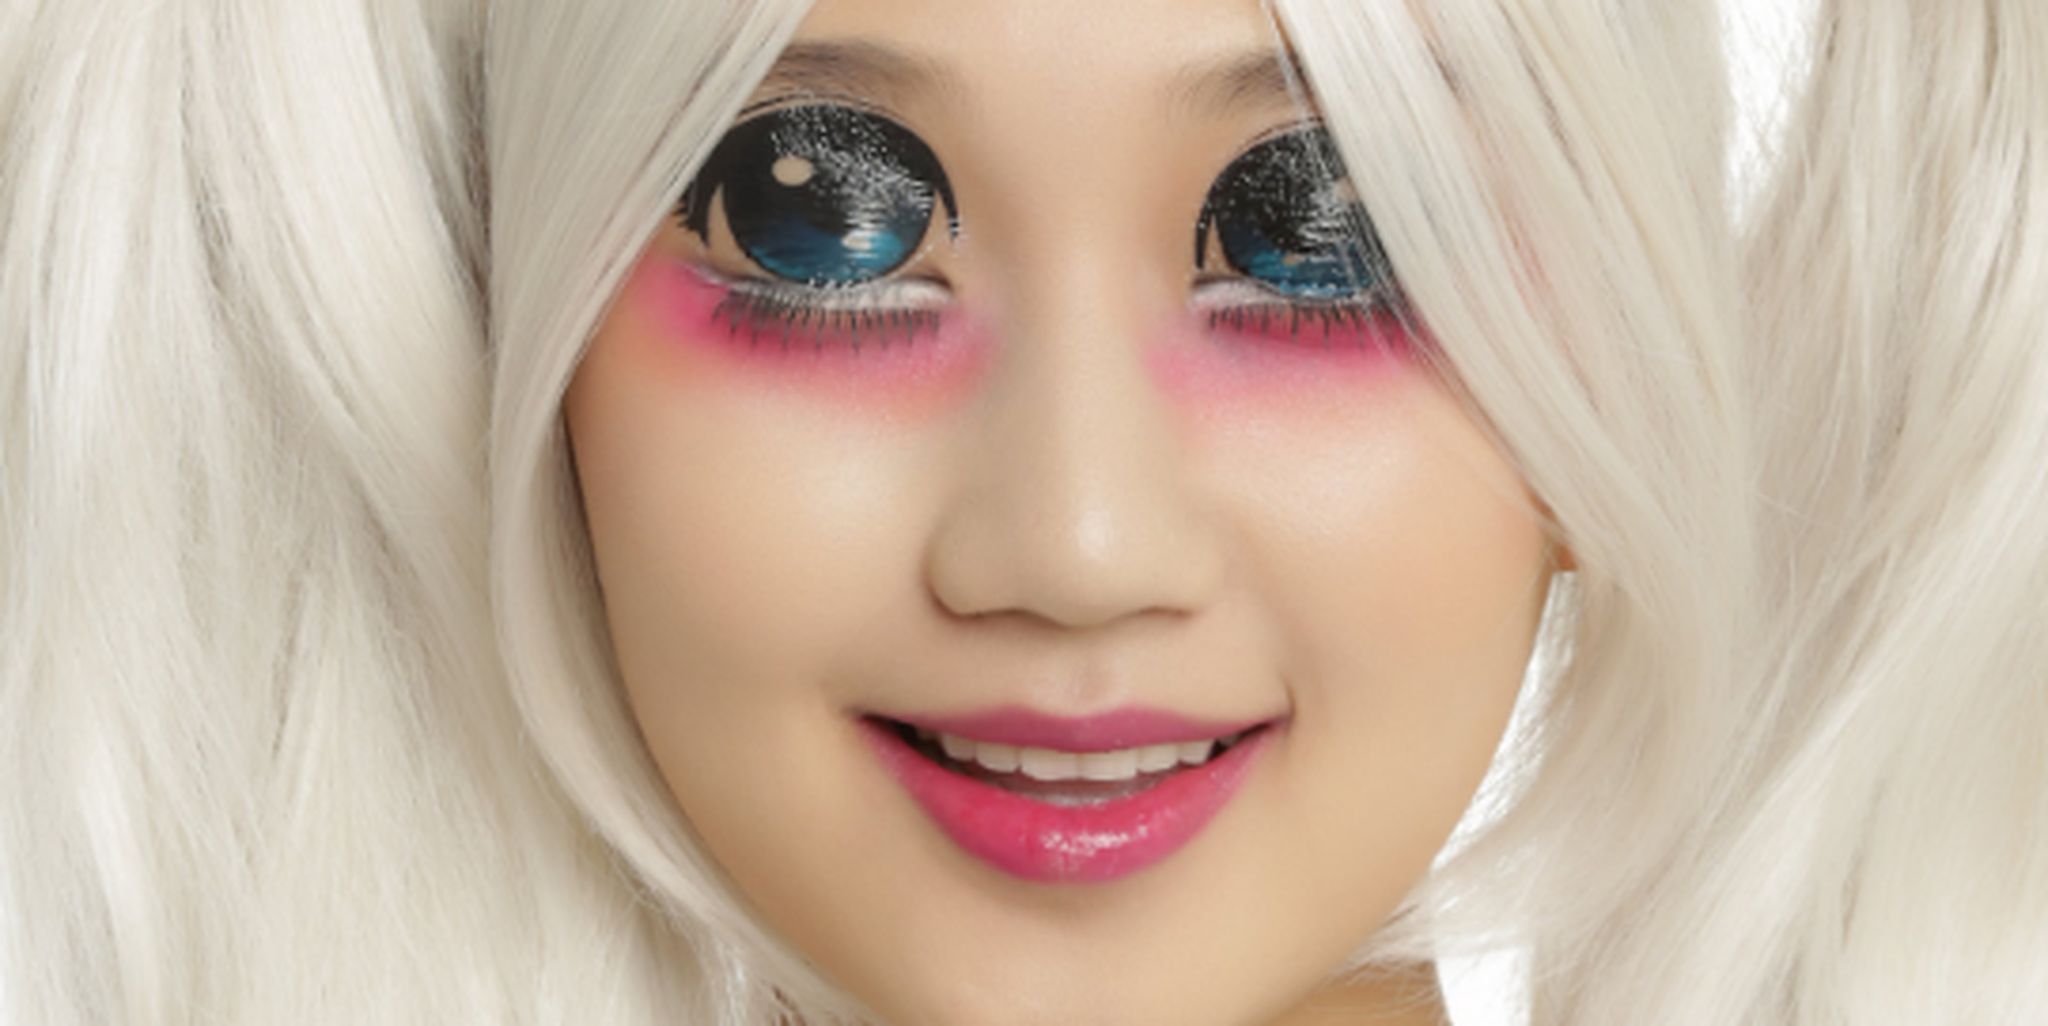 Ohmykitty Online Store on Instagram: Cute Anime Eye makeup